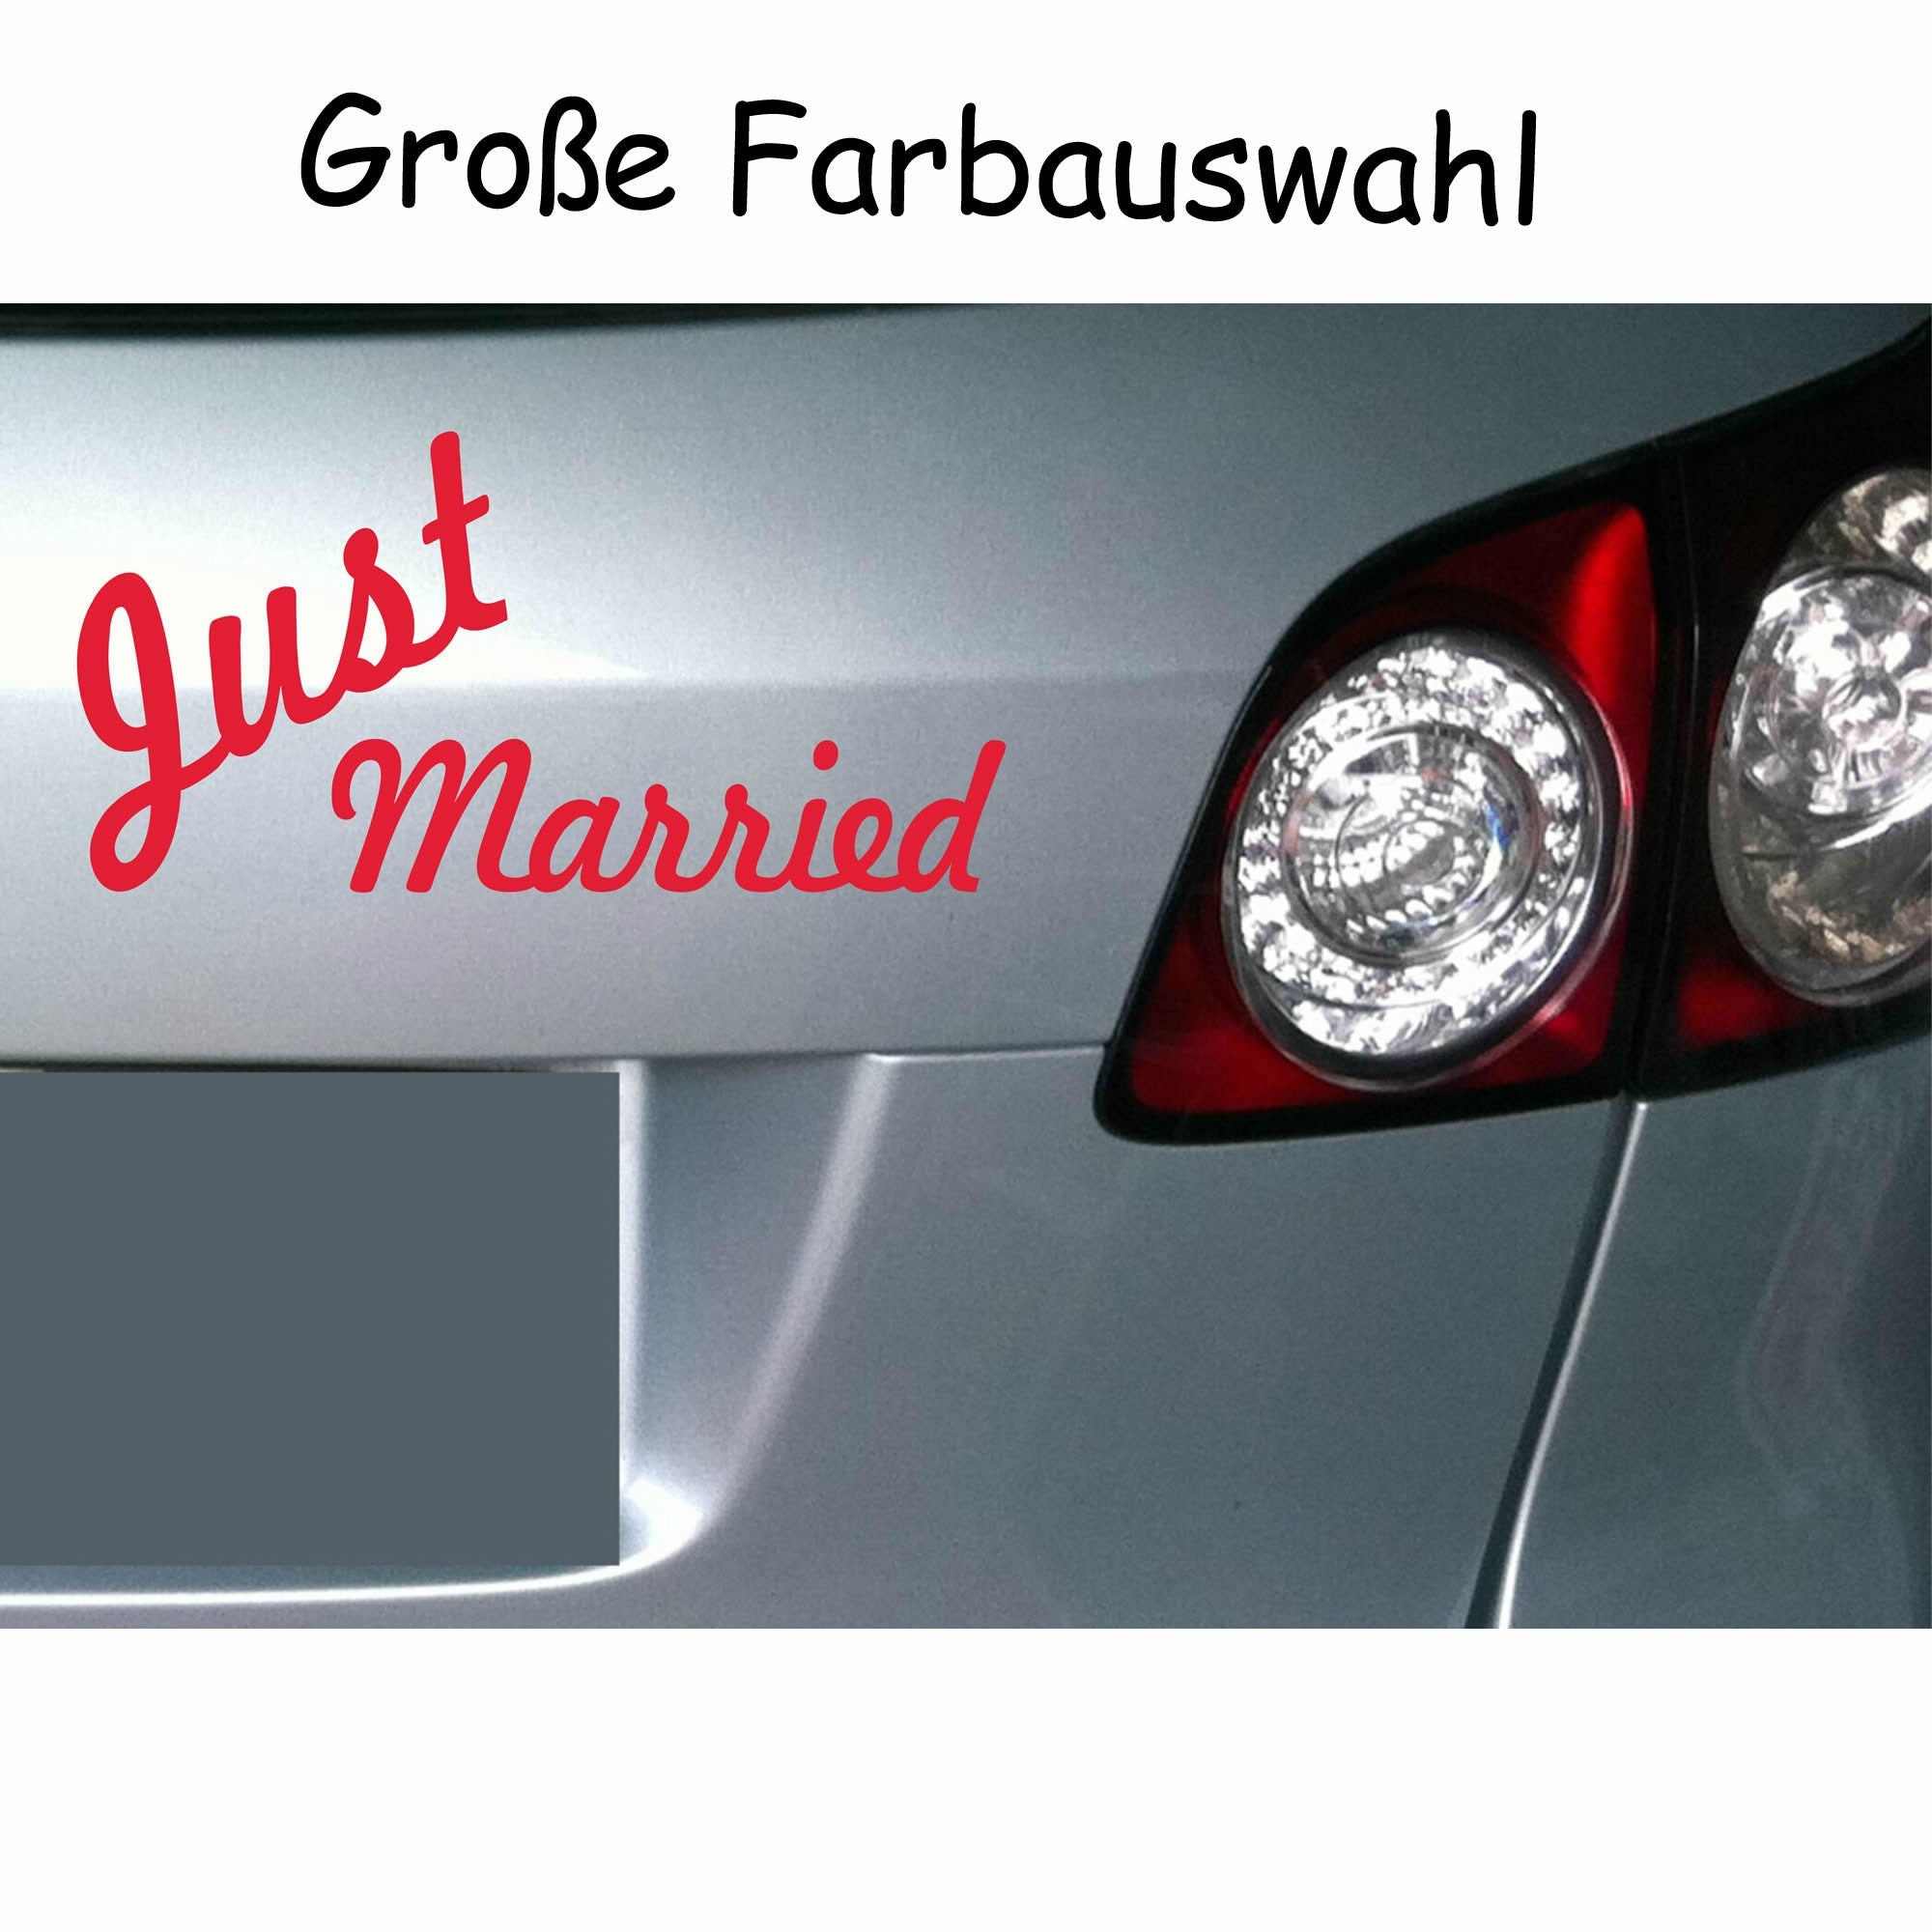 Just Married Folie Silber Aufkleber Auto Heck Deko Hochzeit Banner